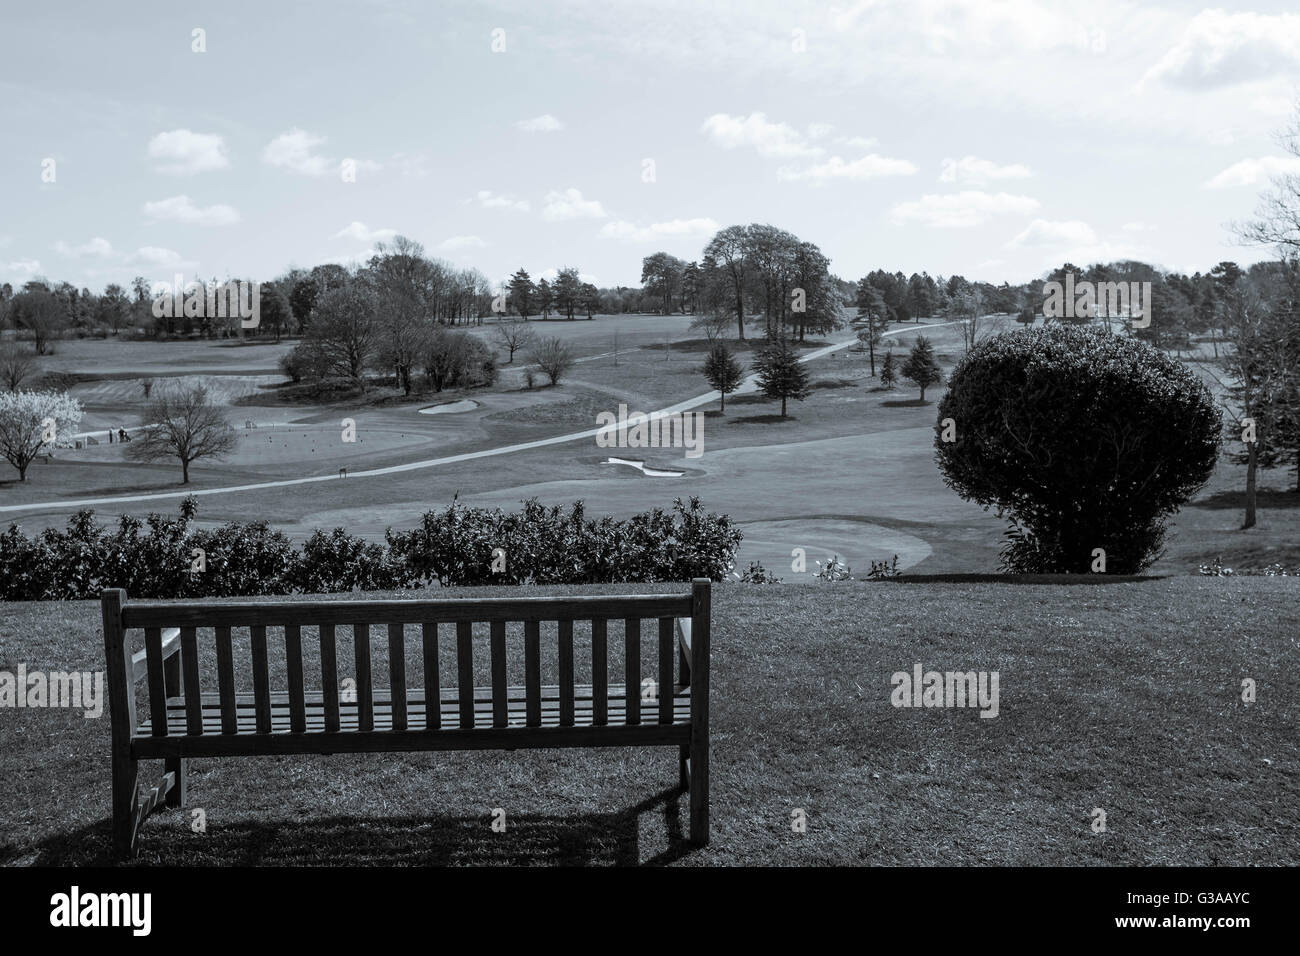 Immagine di un sedile in legno che si affaccia su un paese campo da golf nel Surrey in Inghilterra Foto Stock